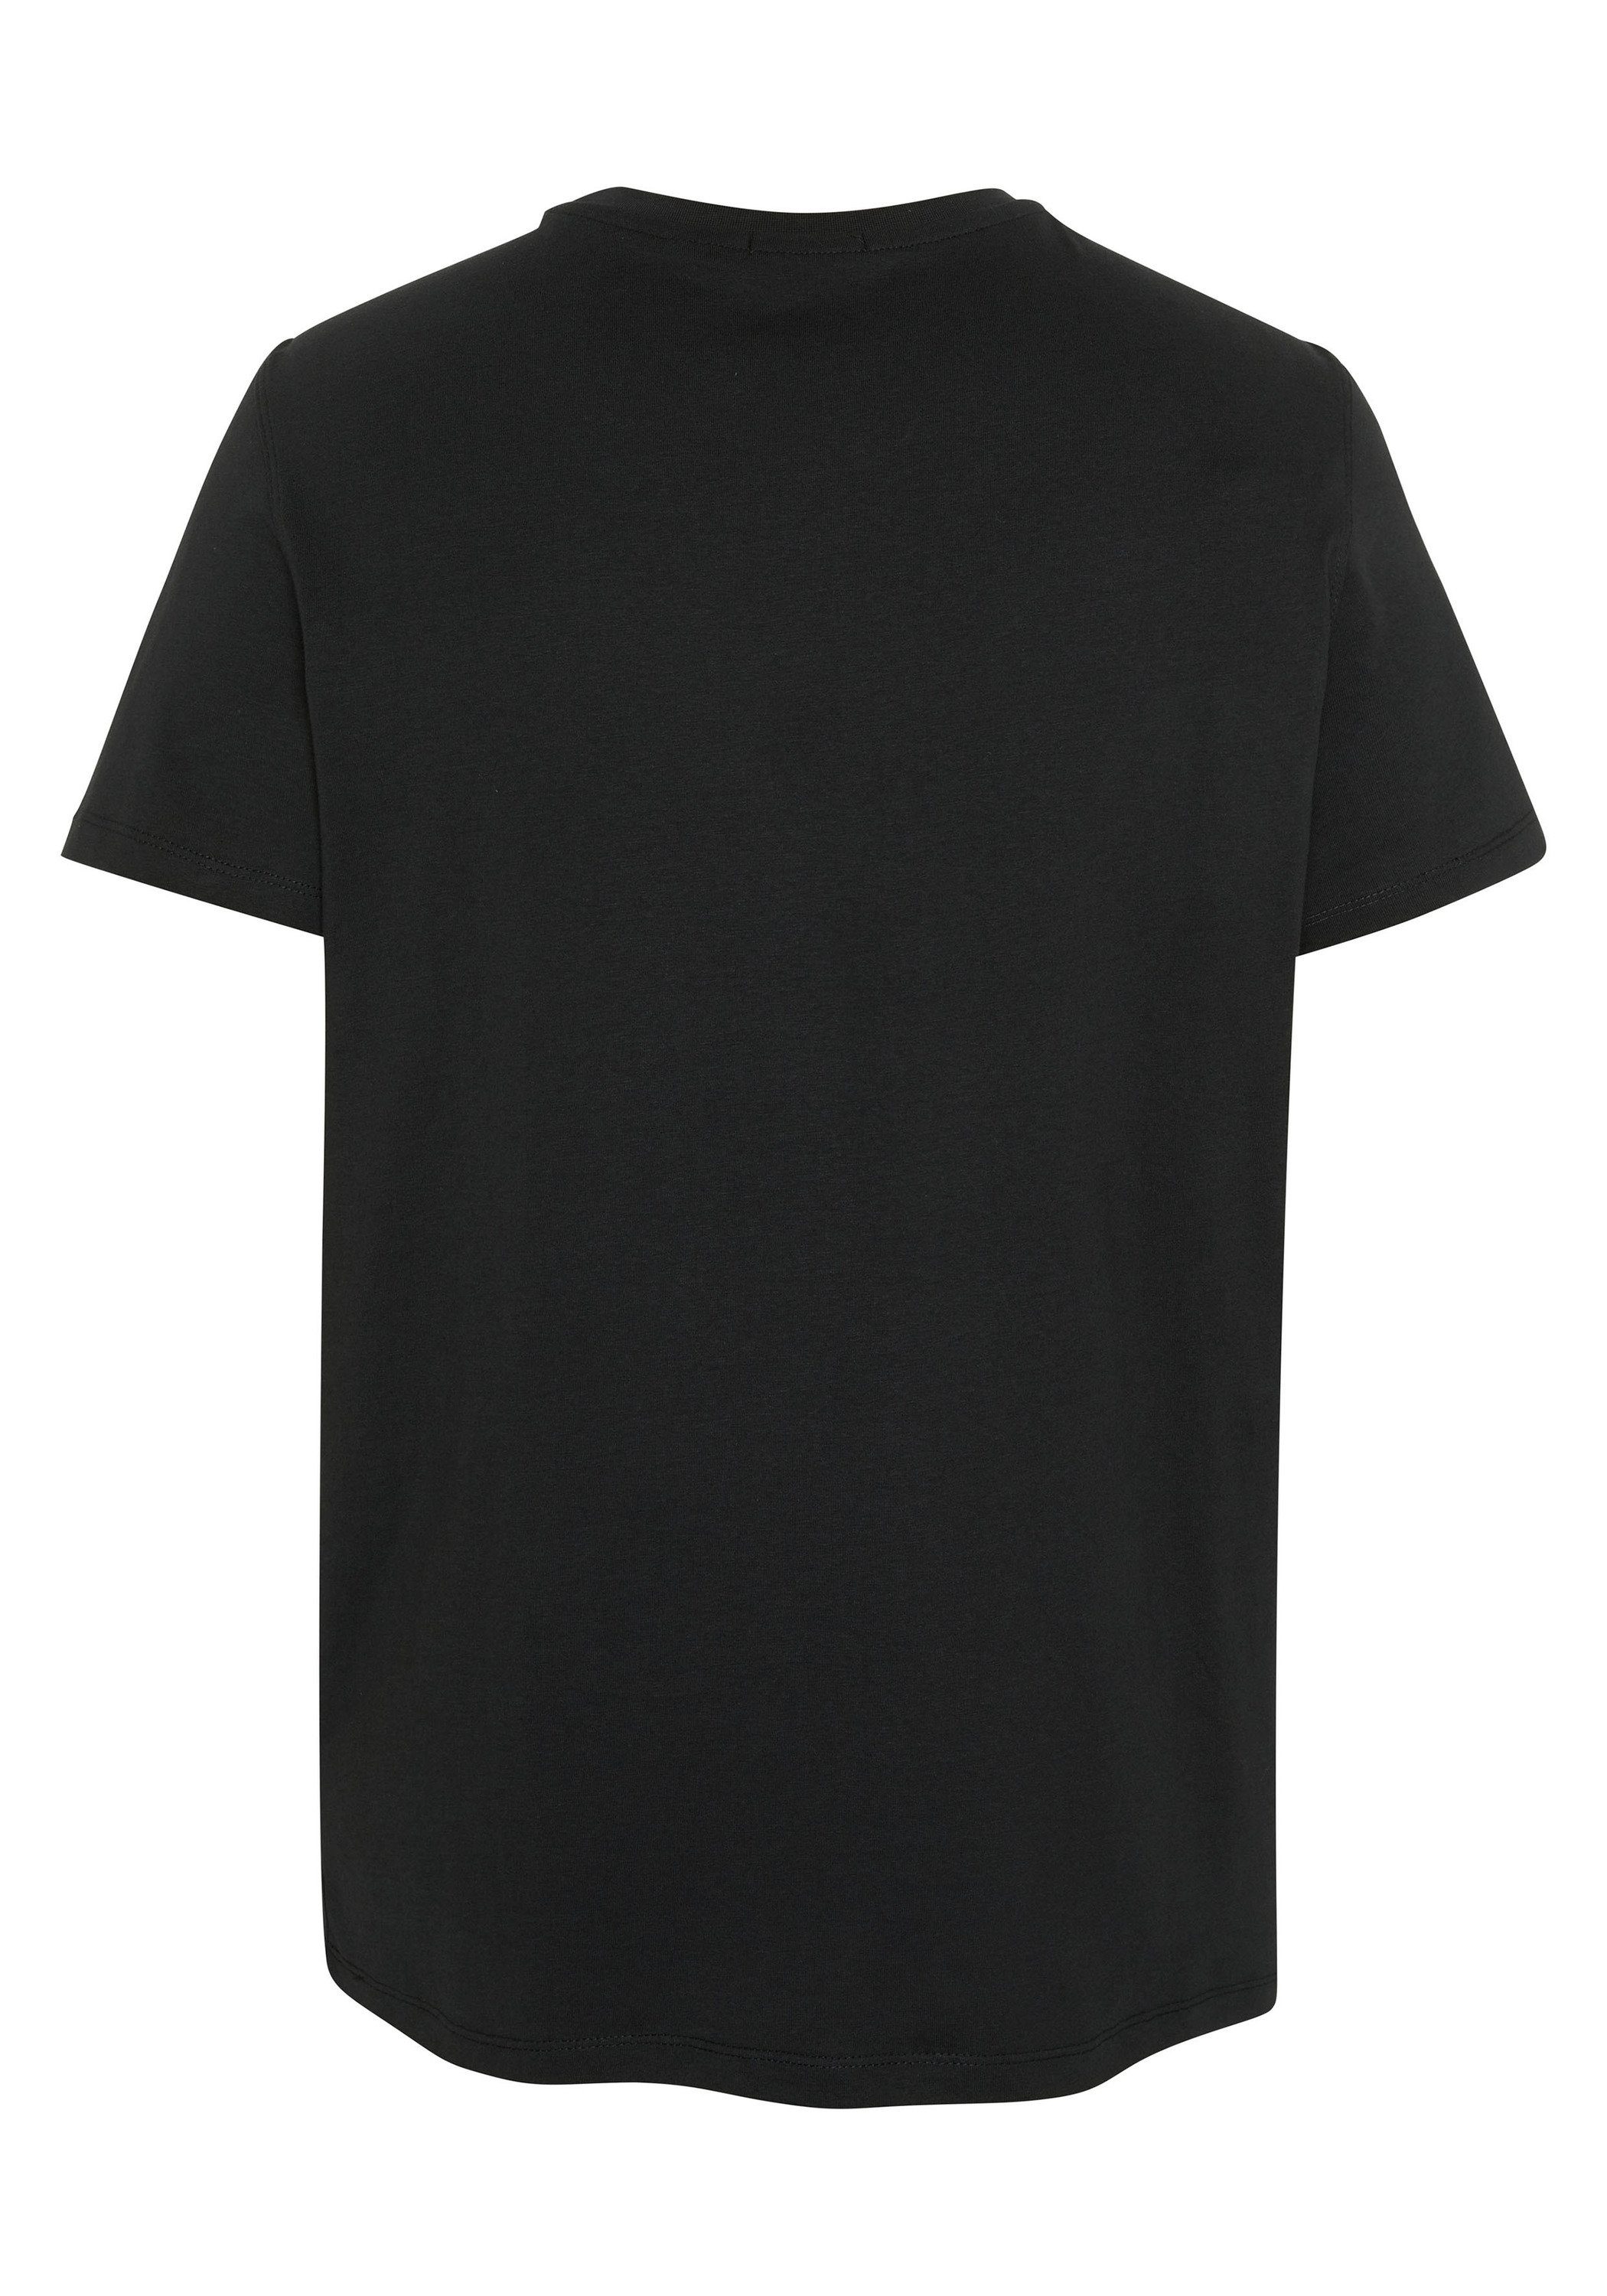 19-3911 Beauty Label-Schriftzug 1 Black Print-Shirt Chiemsee mit T-Shirt